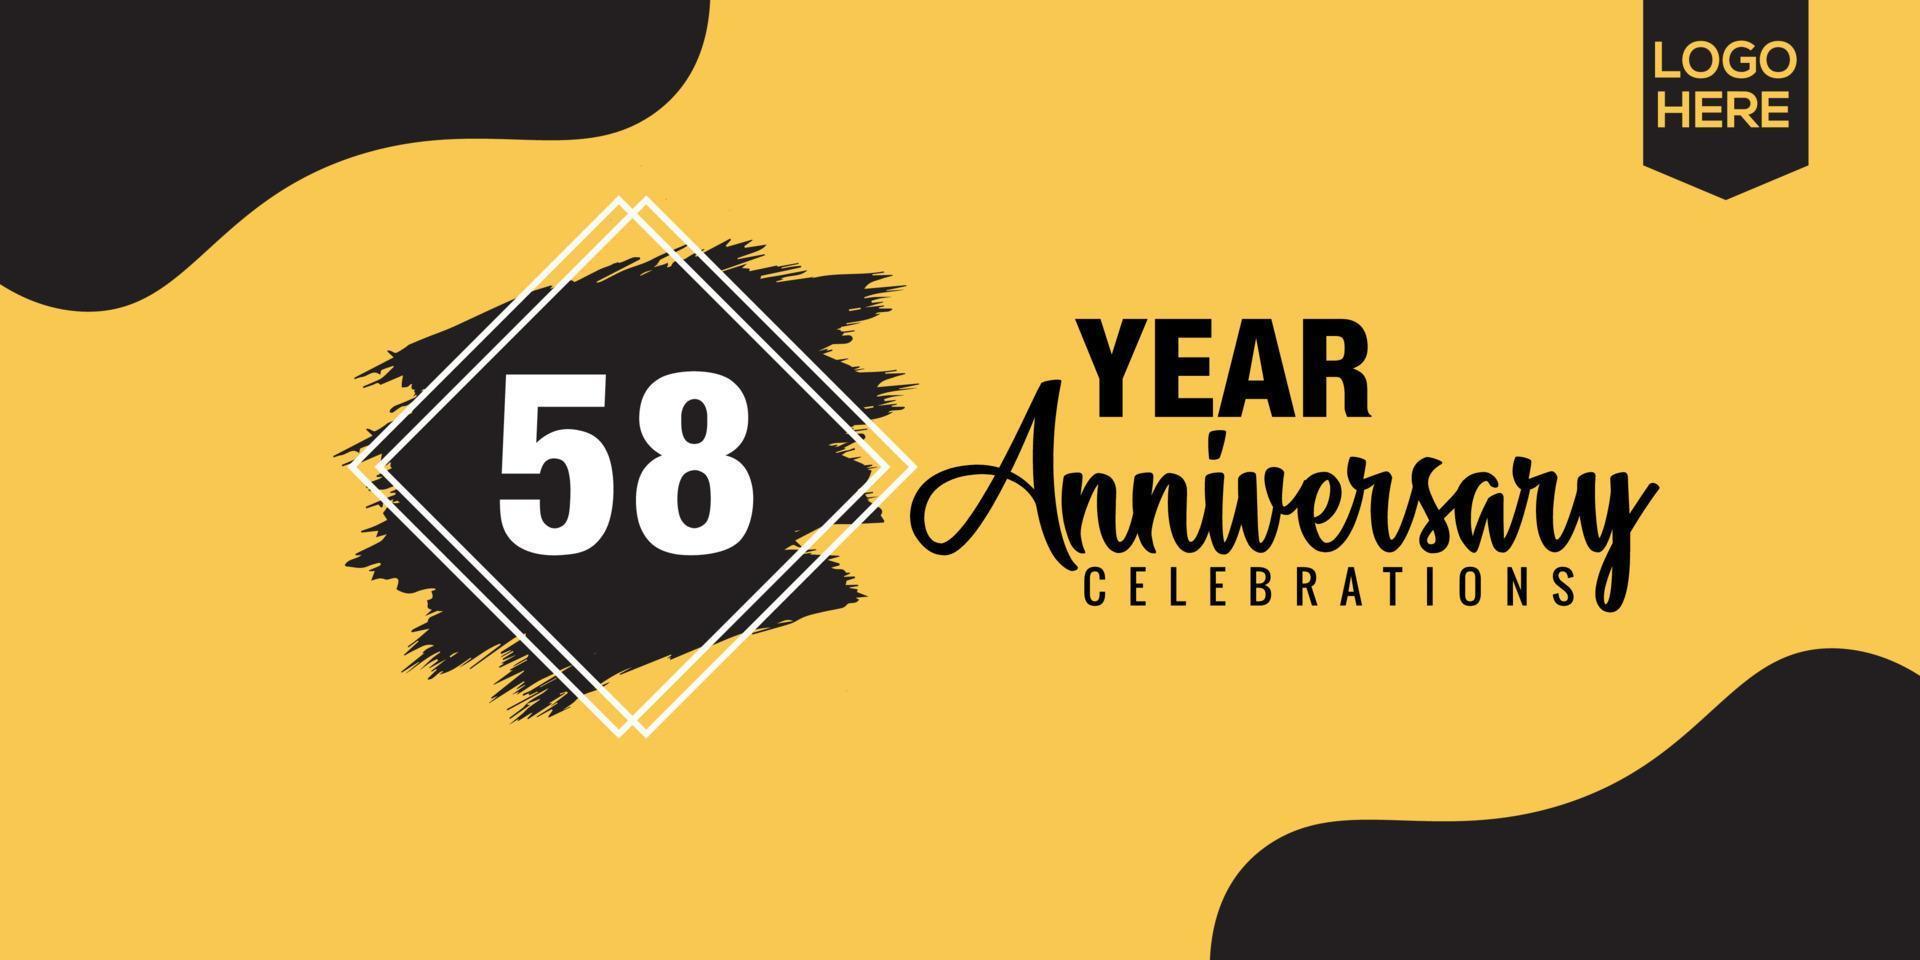 58th anni anniversario celebrazione logo design con nero spazzola e giallo colore con nero astratto vettore illustrazione